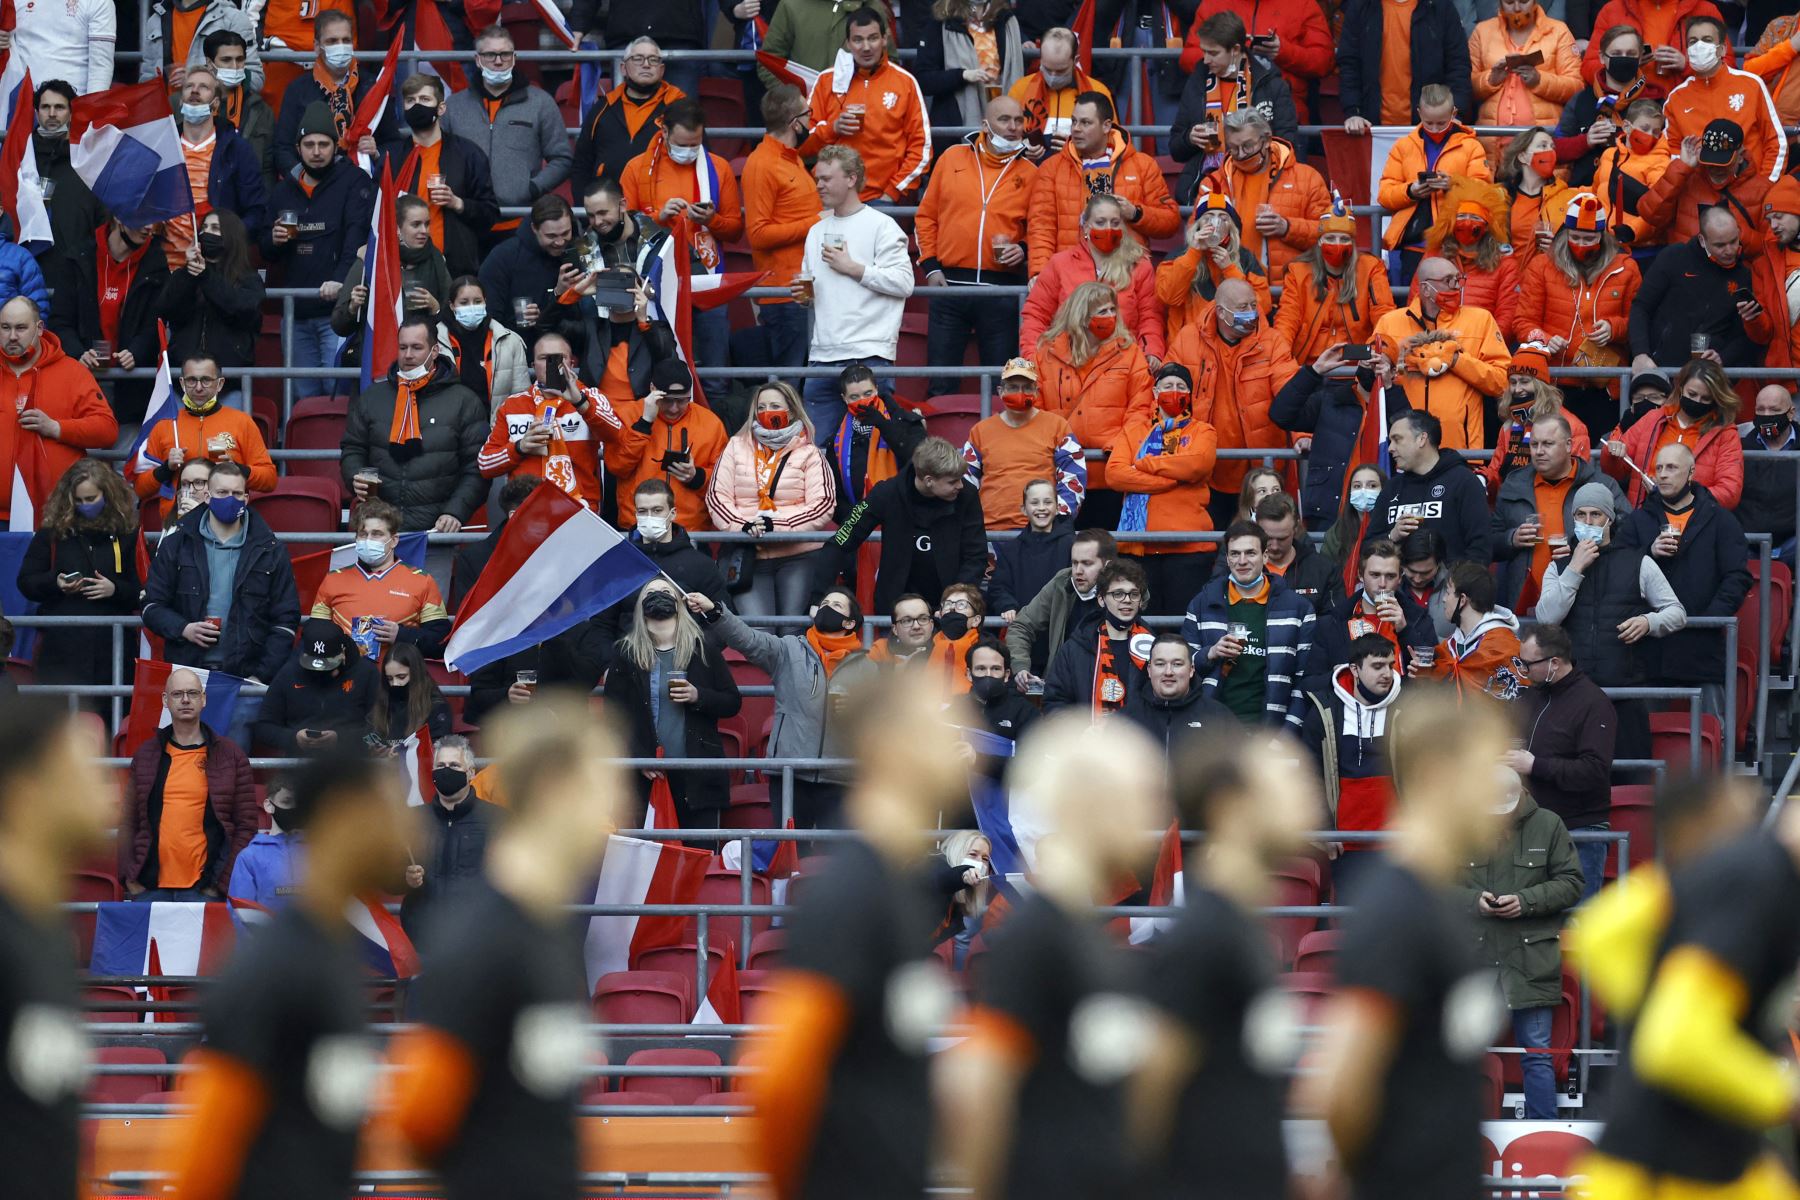 Los fanáticos holandeses, que fueron evaluados para Covid-19 más temprano en el día y dieron negativo, se reúnen en una sección del estadio durante el partido del Grupo G de clasificación para la Copa del Mundo entre Holanda y Letonia en el Johan Cruijff Arena.
Foto: AFP